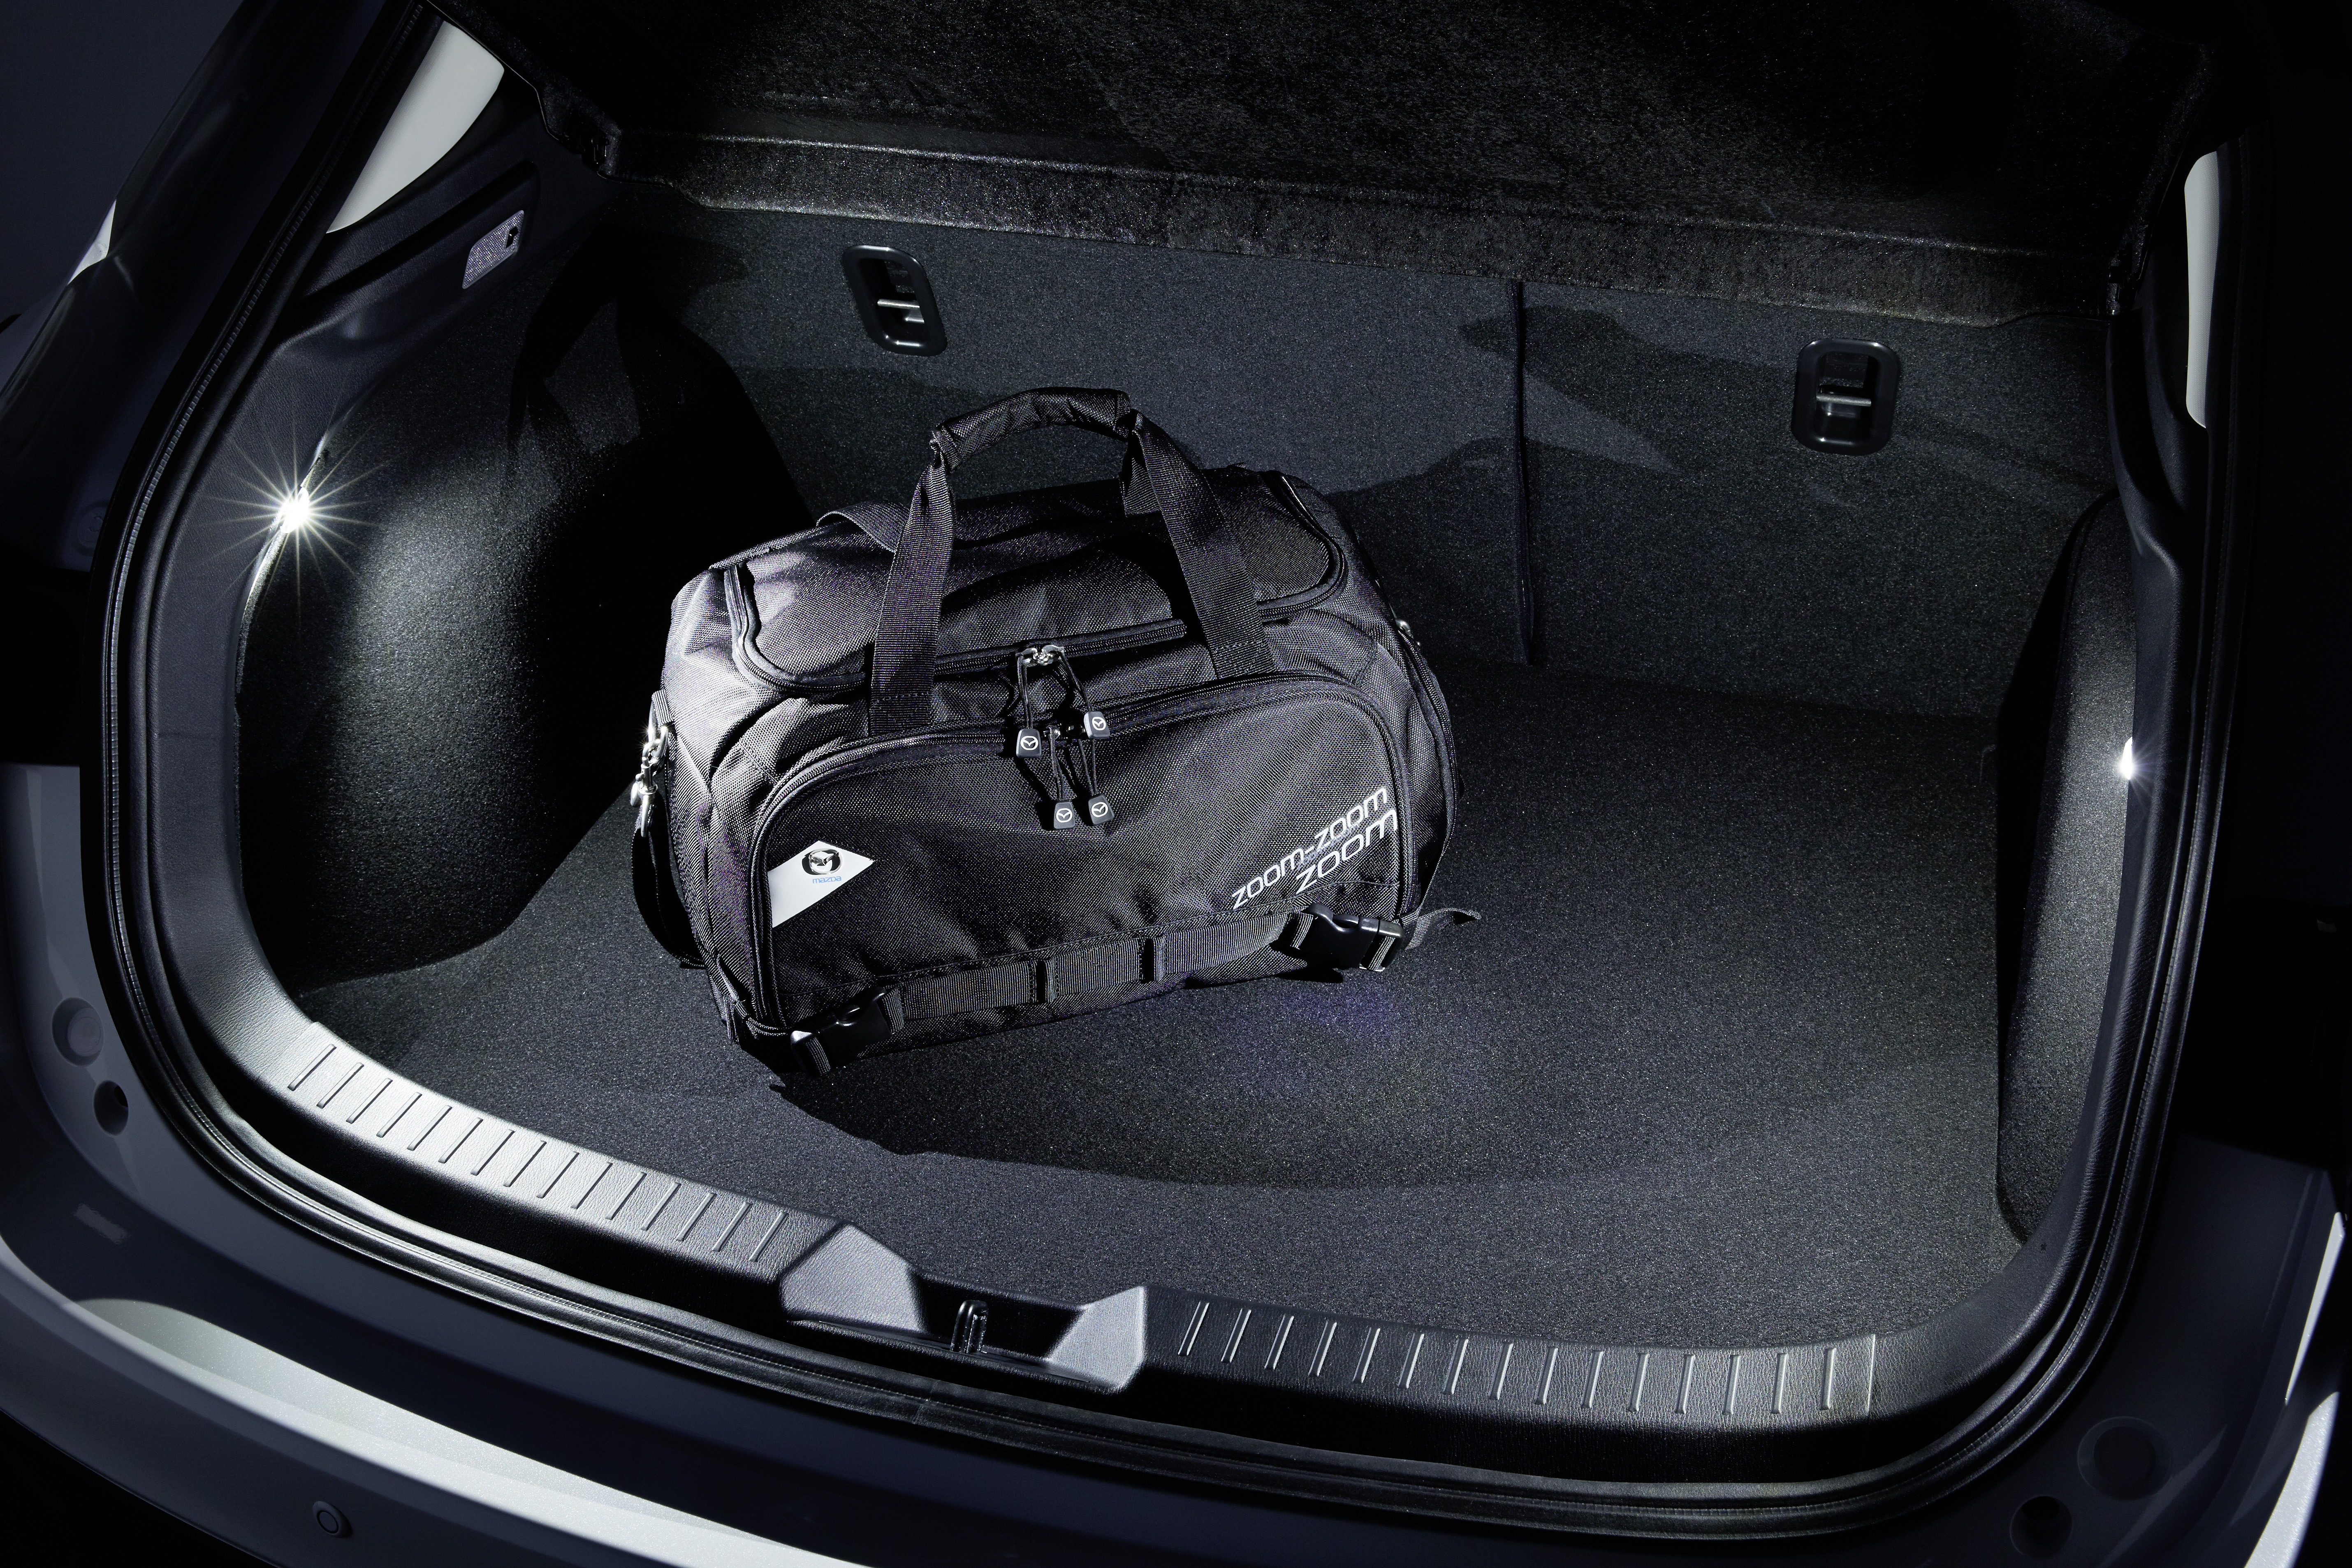 Podświetlenie bagażnika - diodowe C834V1620, Mazda 3 BM, 2 DJ1, 3 BN, 2 DJ1 (2020) #1